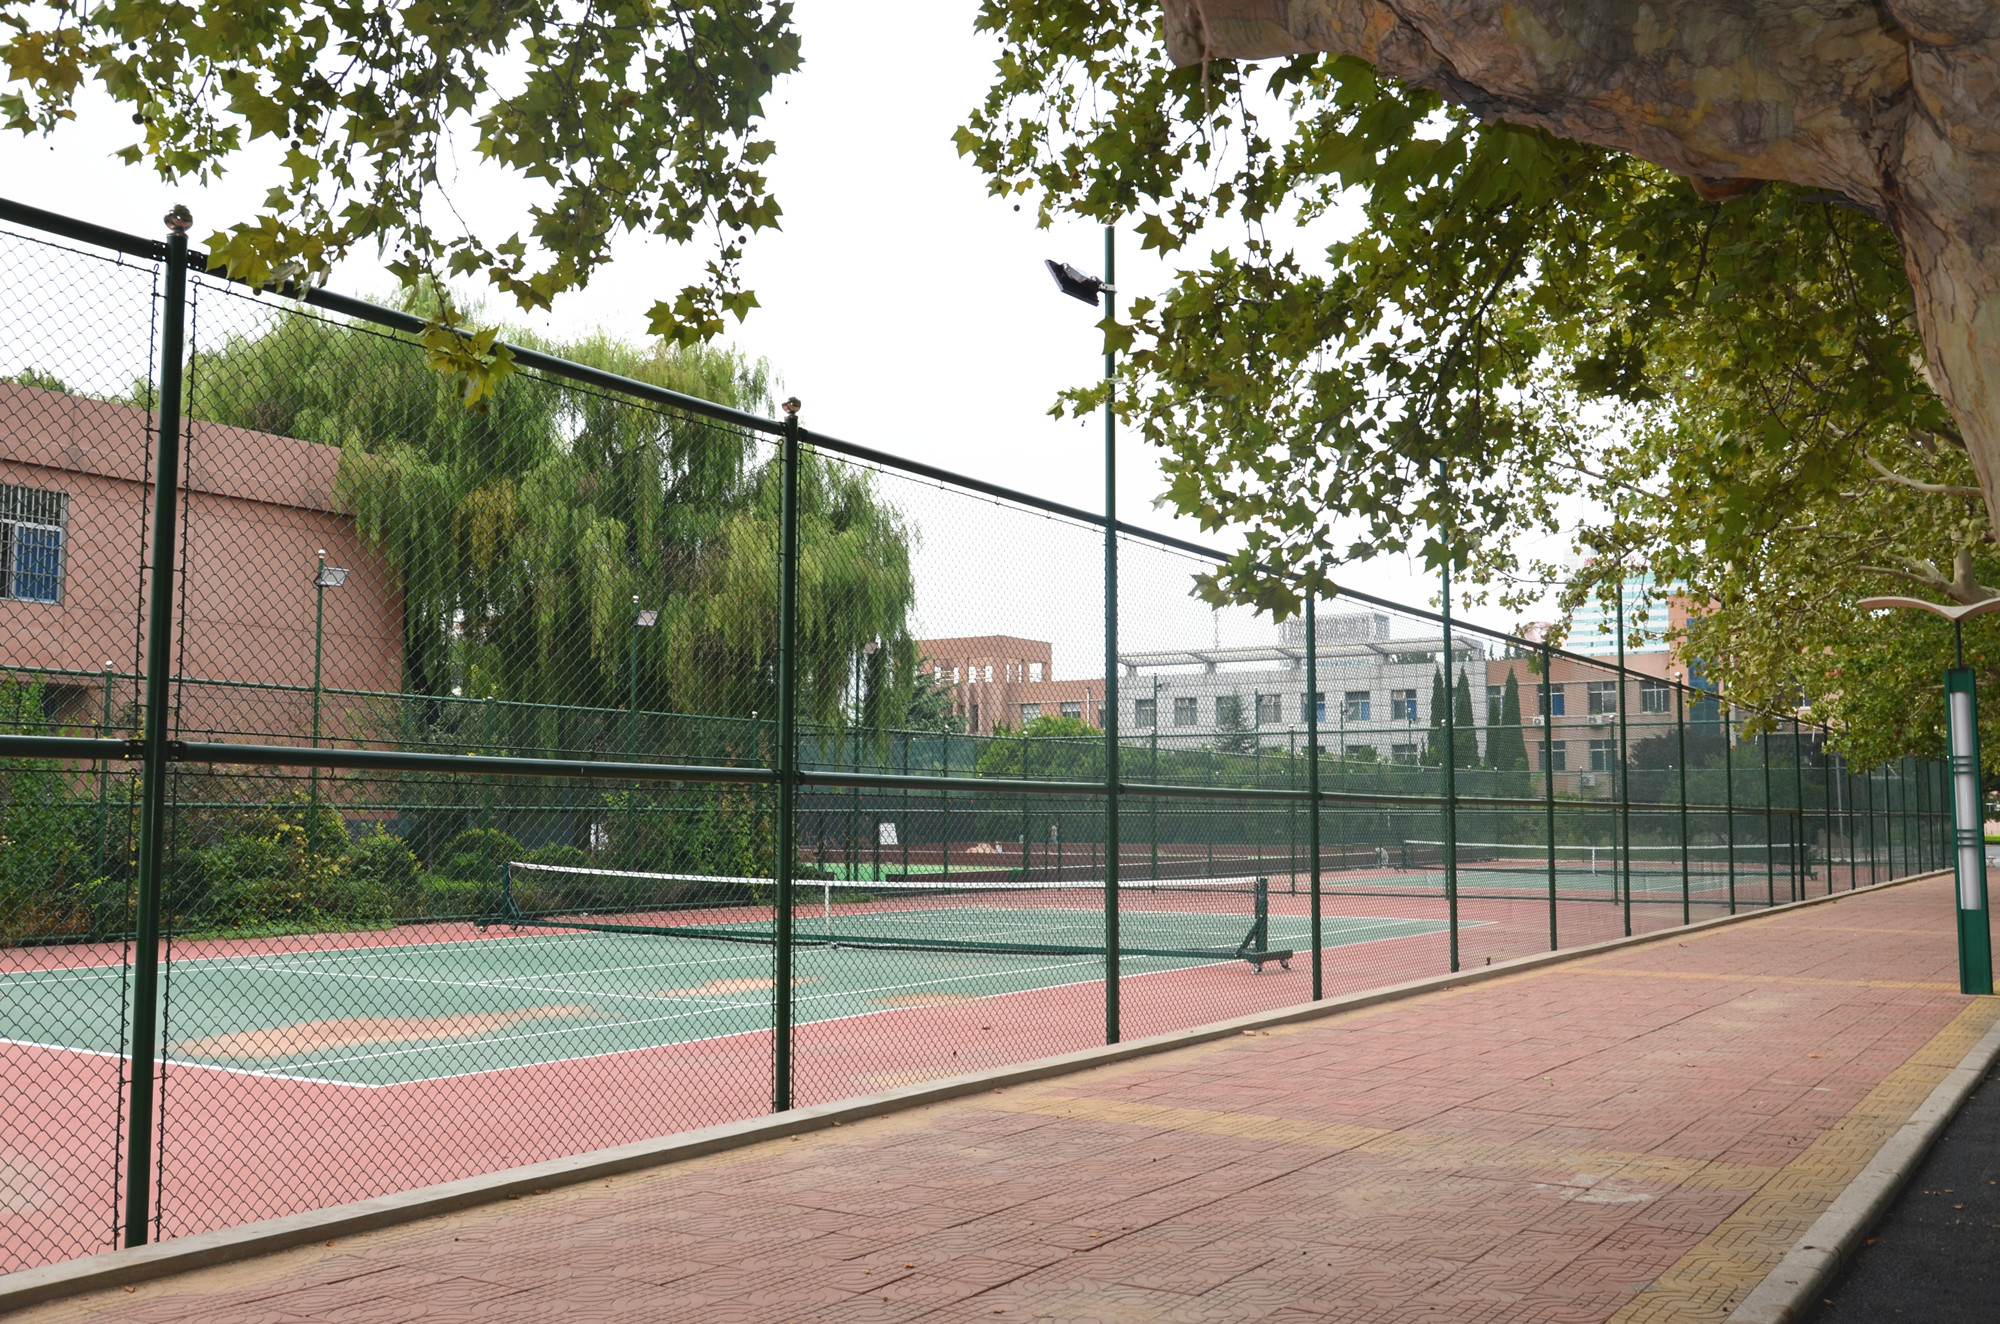 石子山体育公园网球场图片